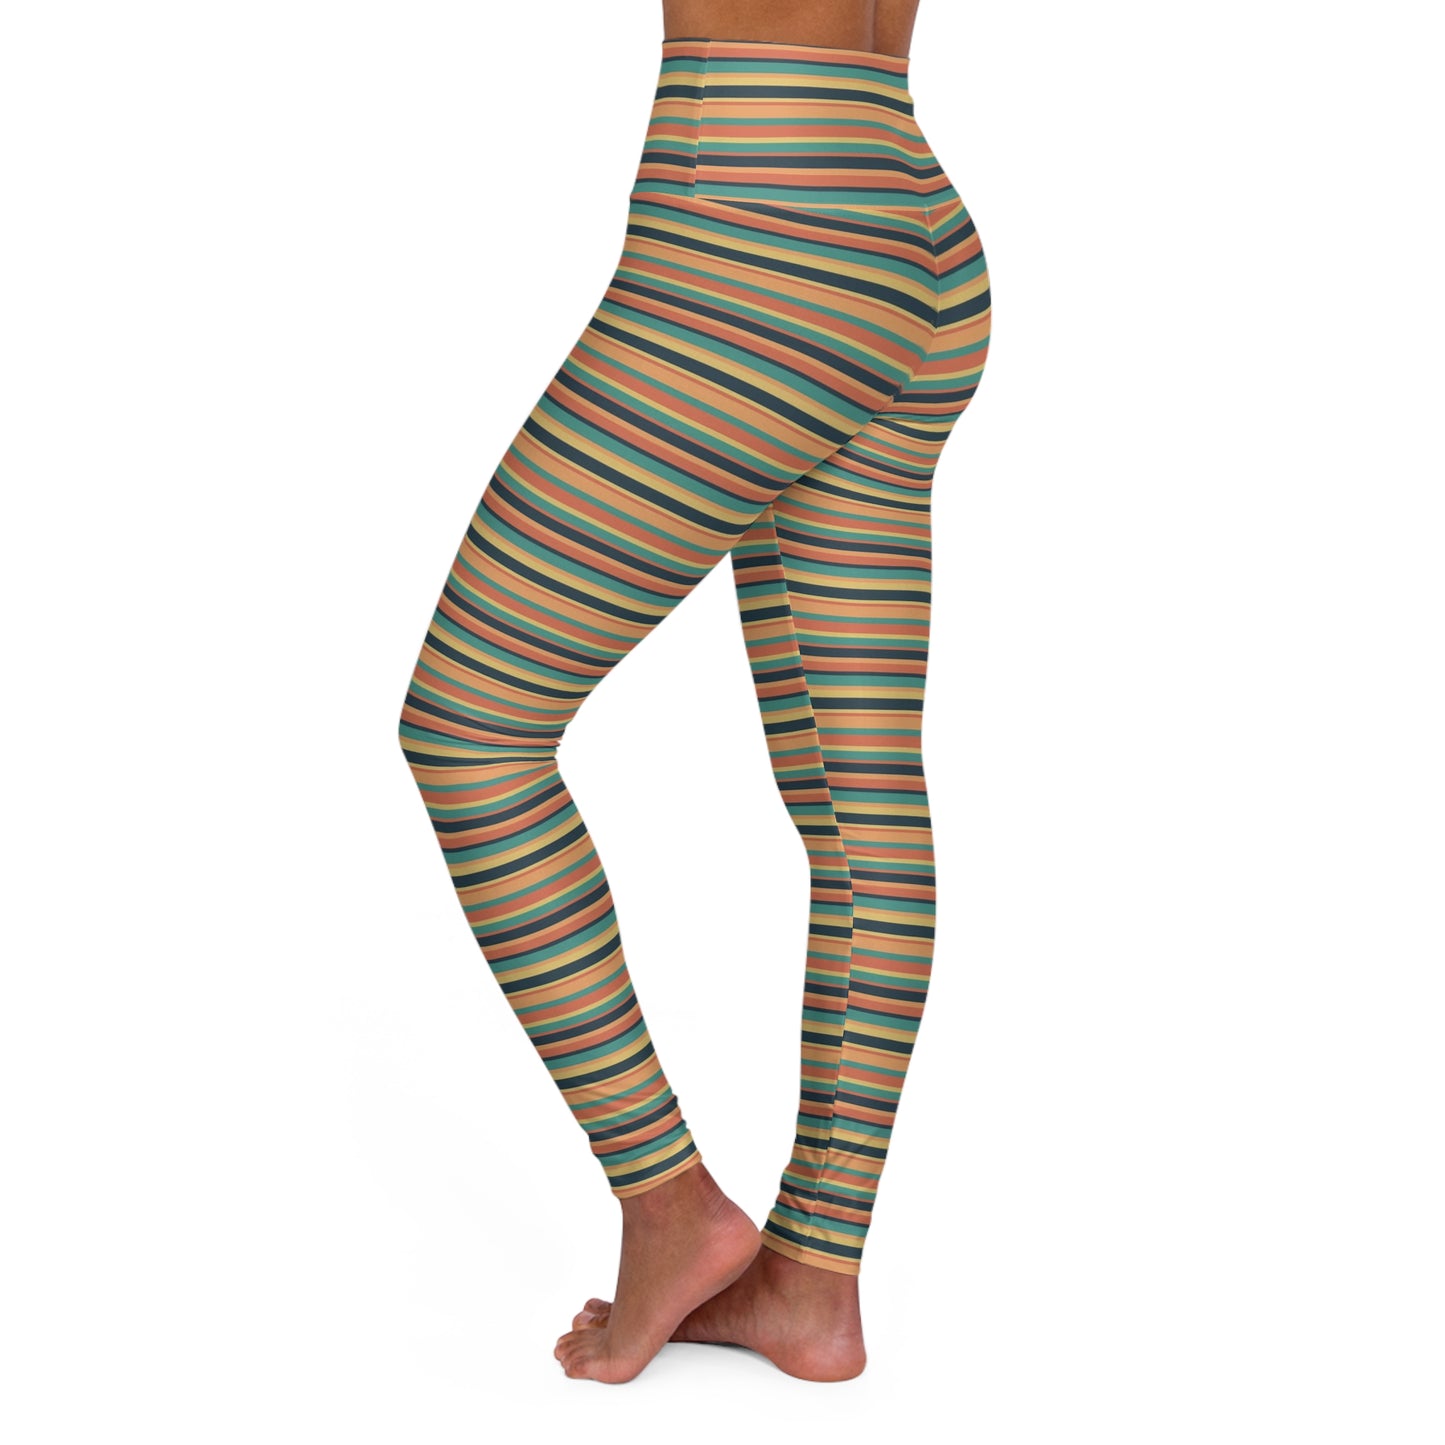 Sunbaked Stripes High Waisted Yoga Leggings